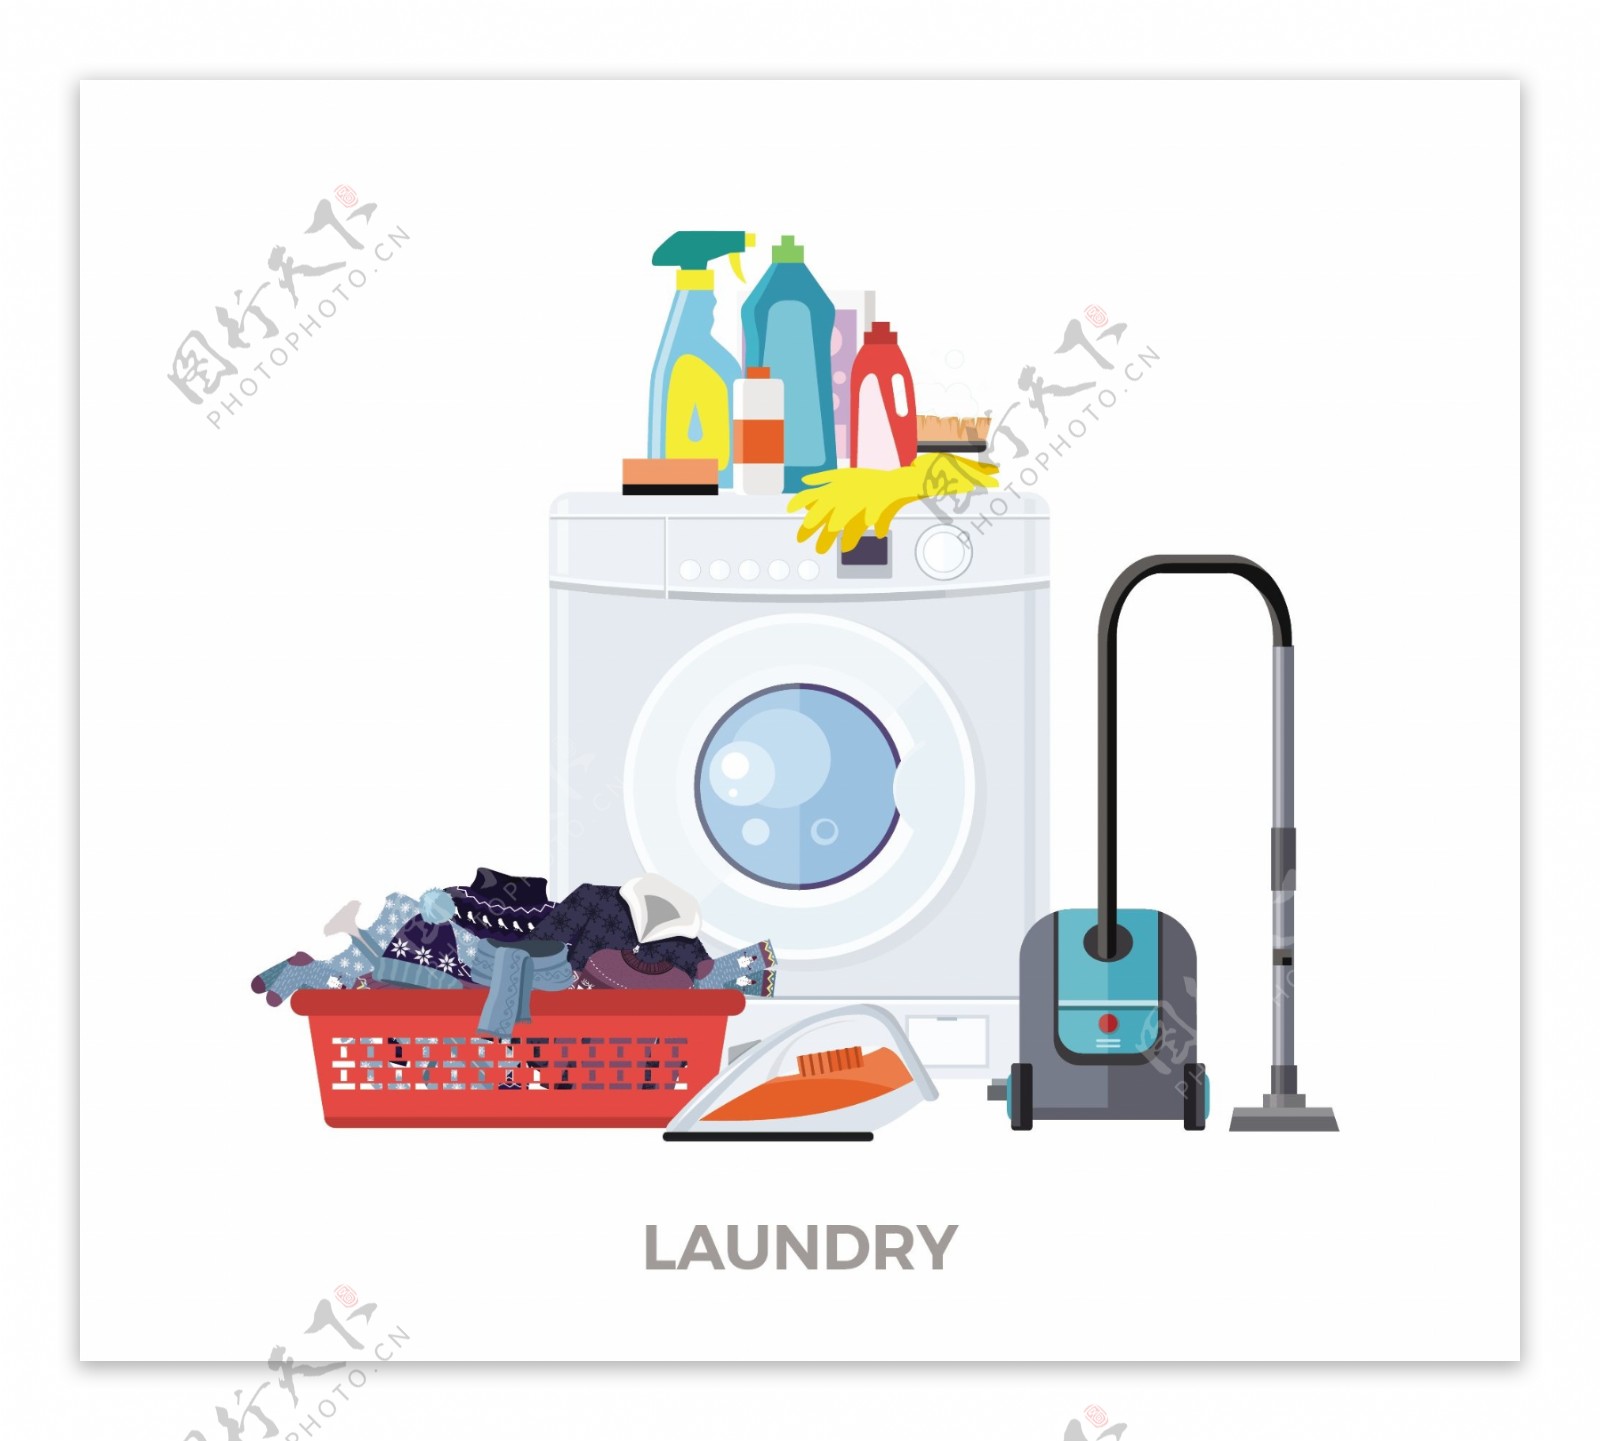 洗衣房元素矢量素材